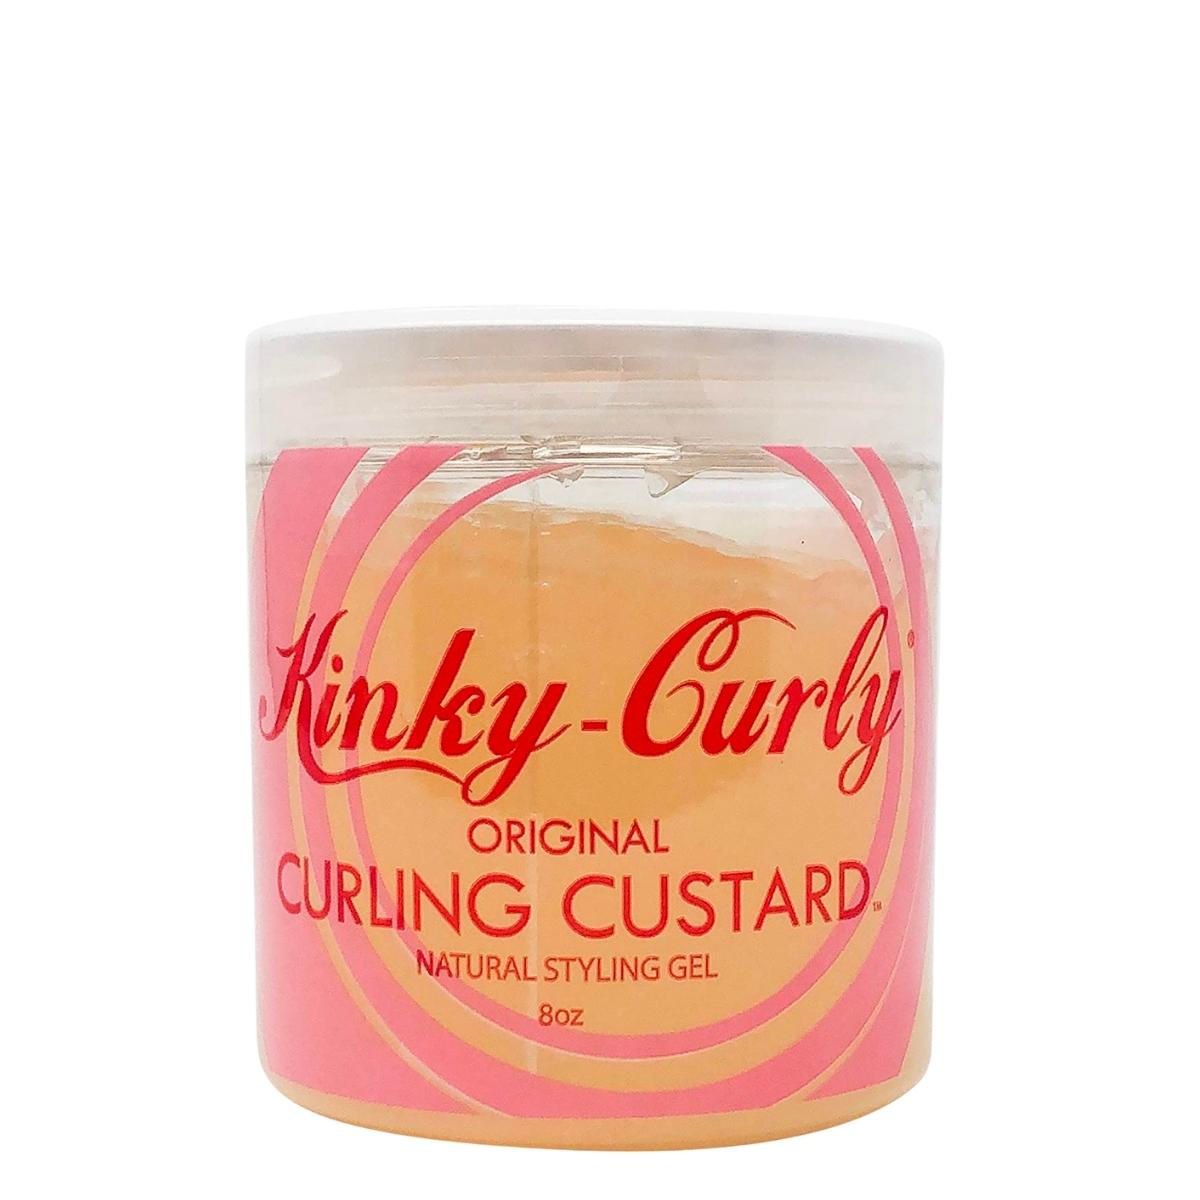 Le Curling Custard de Kinky Curly définie parfaitement vos boucles tout en hydratant et en donnant de la brillance à vos cheveux. Il est adapté aux cheveux ondulés, bouclés et crépus.